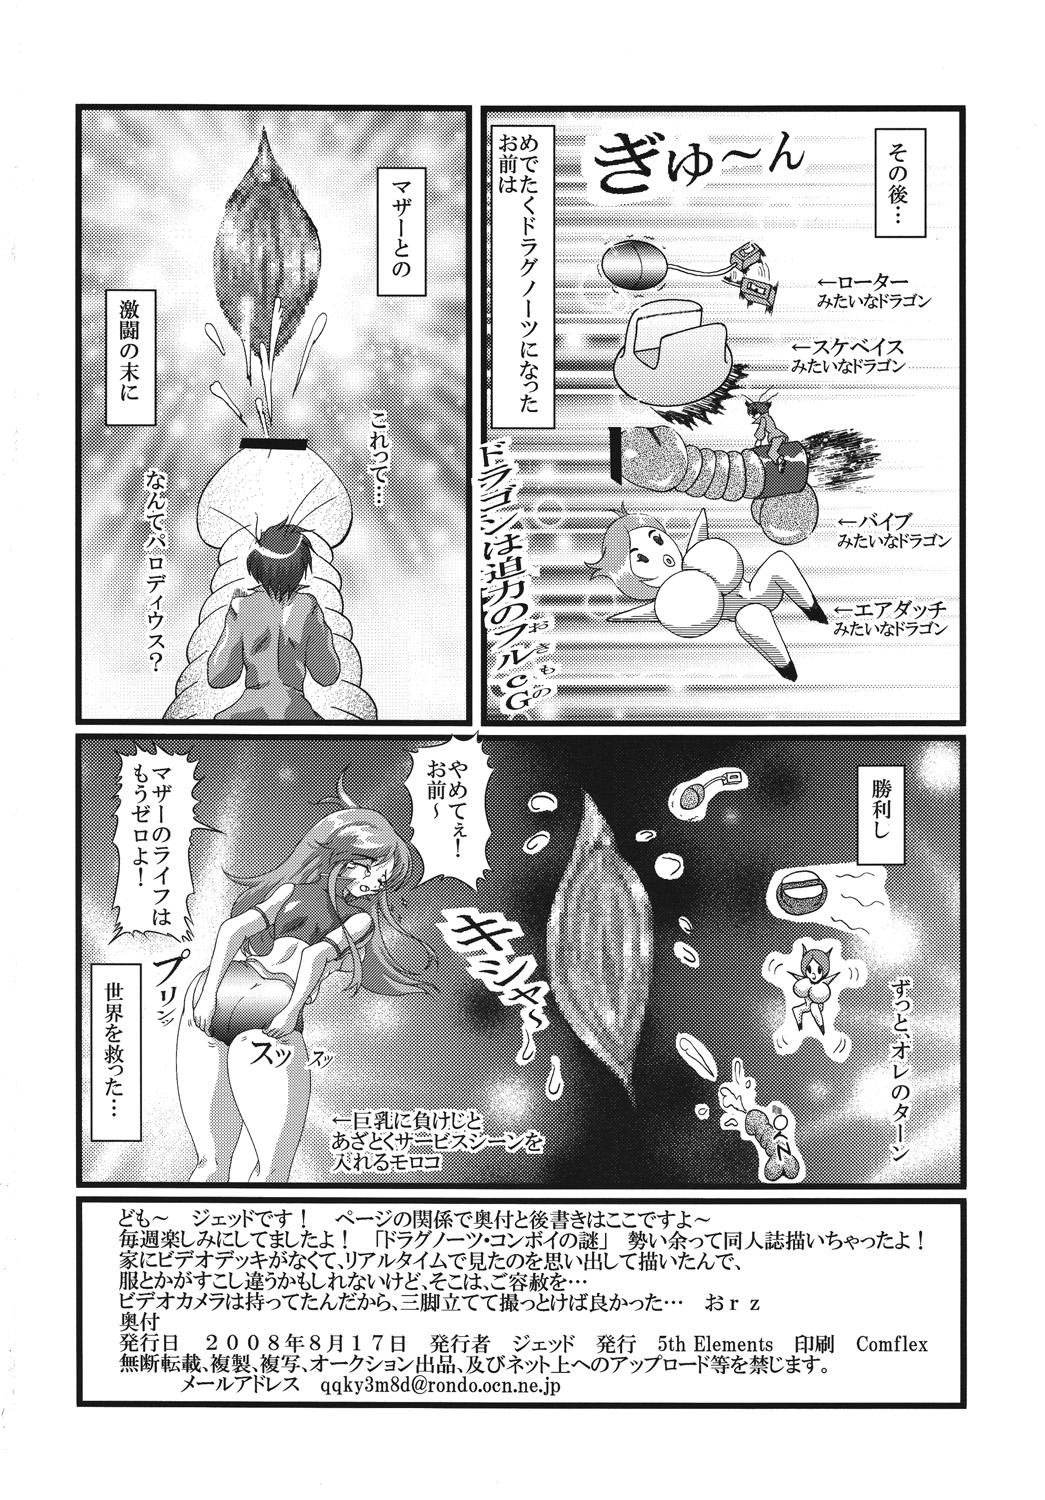 Periscope Doragon no aru kurashi - Dragonaut Bra - Page 21